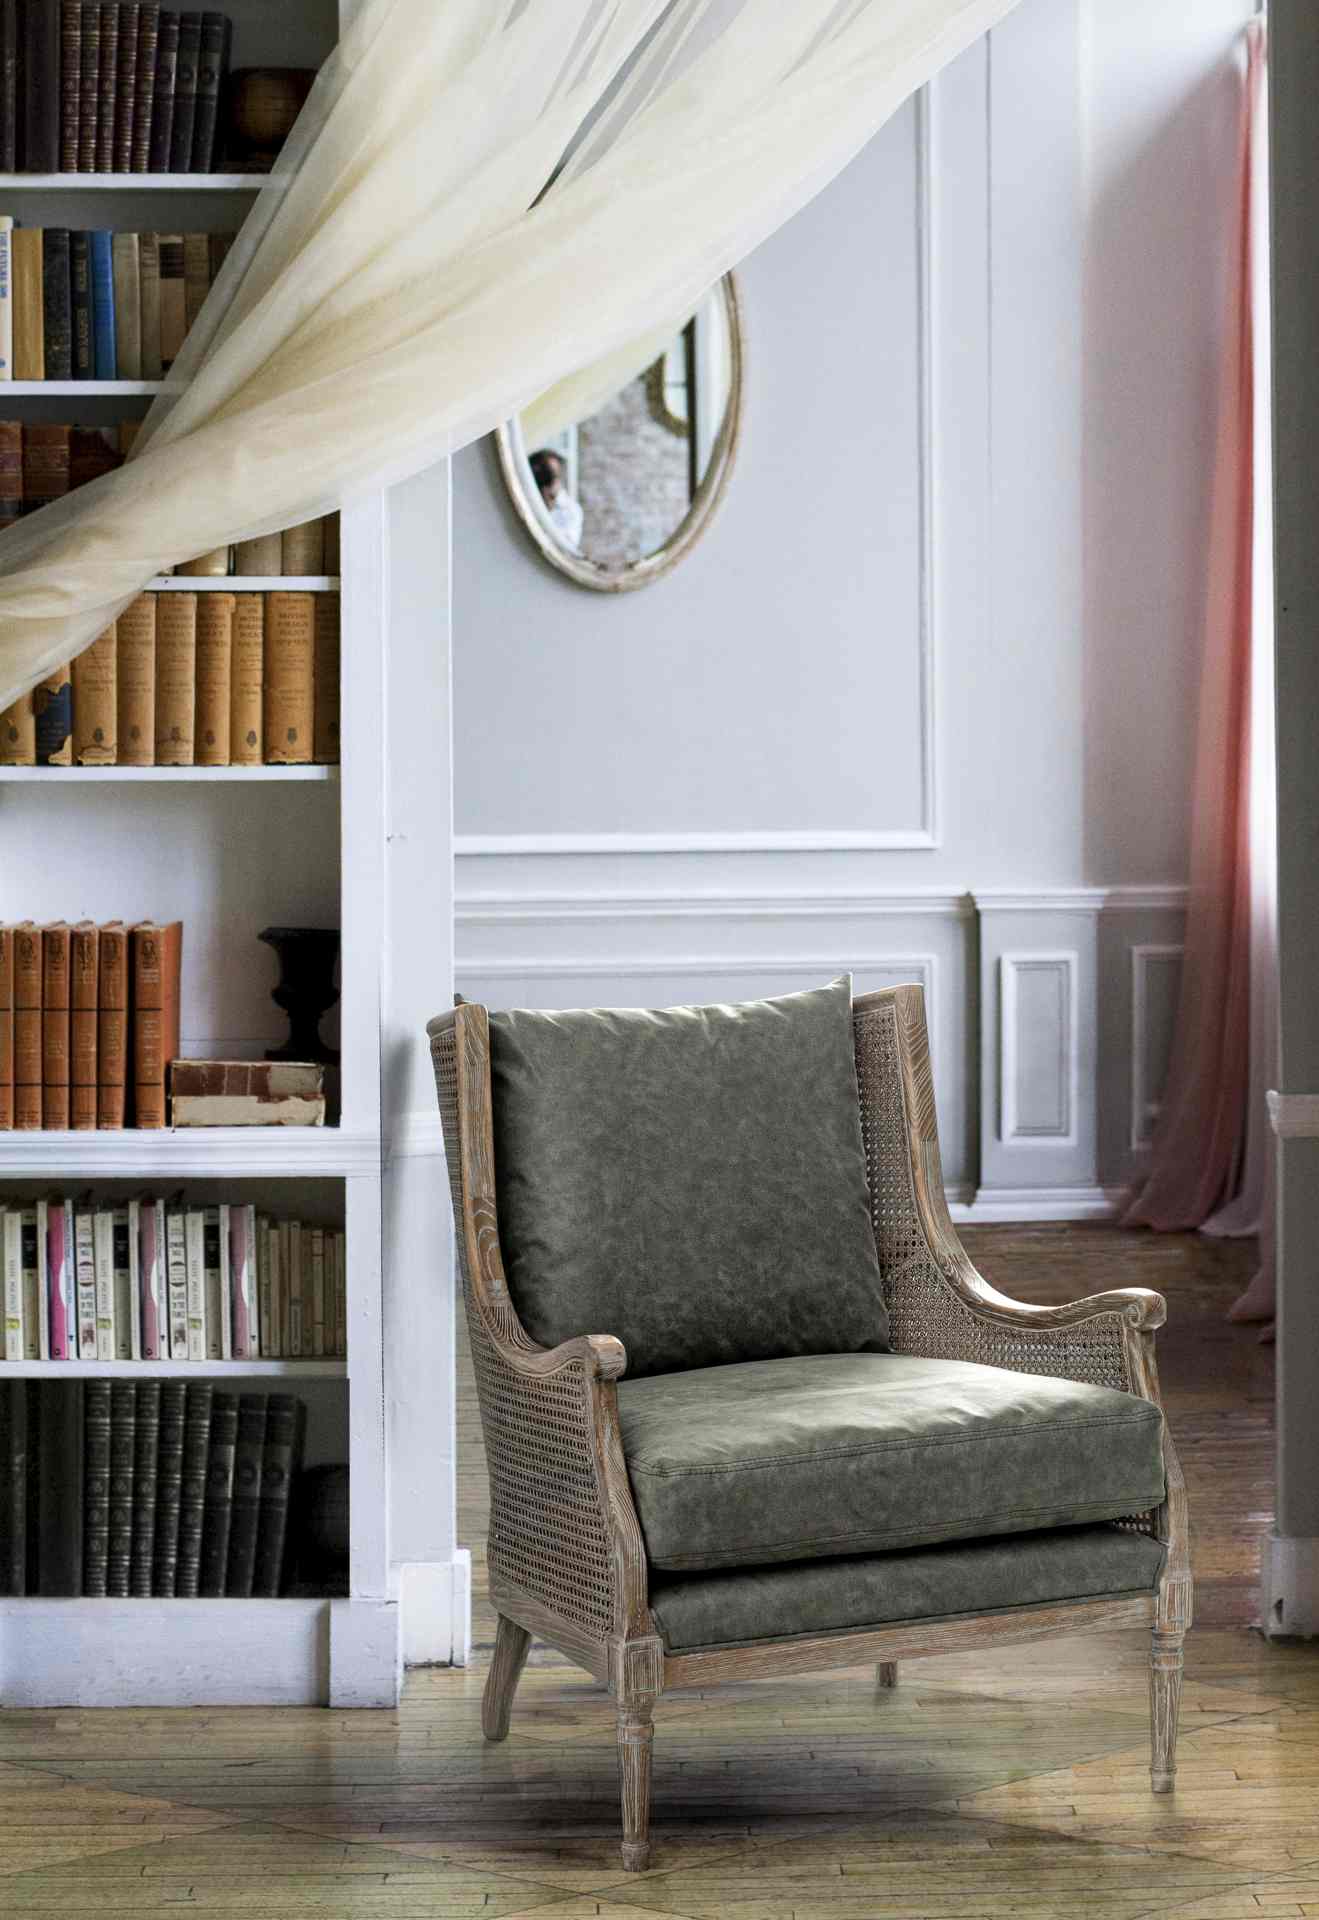 Der Sessel Carolina überzeugt mit seinem klassischen Design. Gefertigt wurde er aus Stoff, welcher einen grünen Farbton besitzt. Das Gestell ist aus Eschenholz und hat eine natürliche Farbe. Der Sessel besitzt eine Sitzhöhe von 48 cm. Die Breite beträgt 7